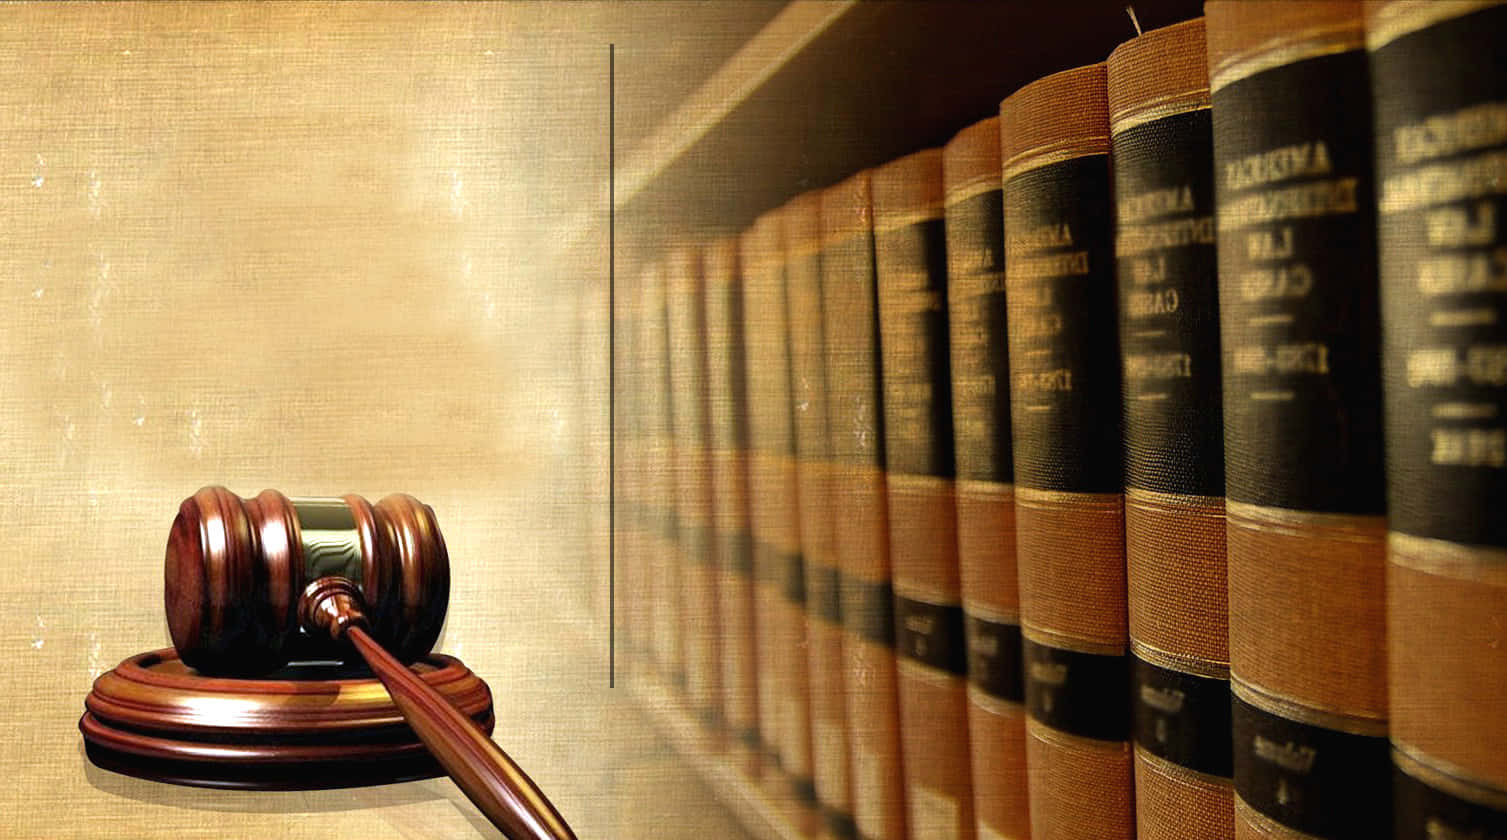 Legal Gaveland Law Books.jpg Wallpaper